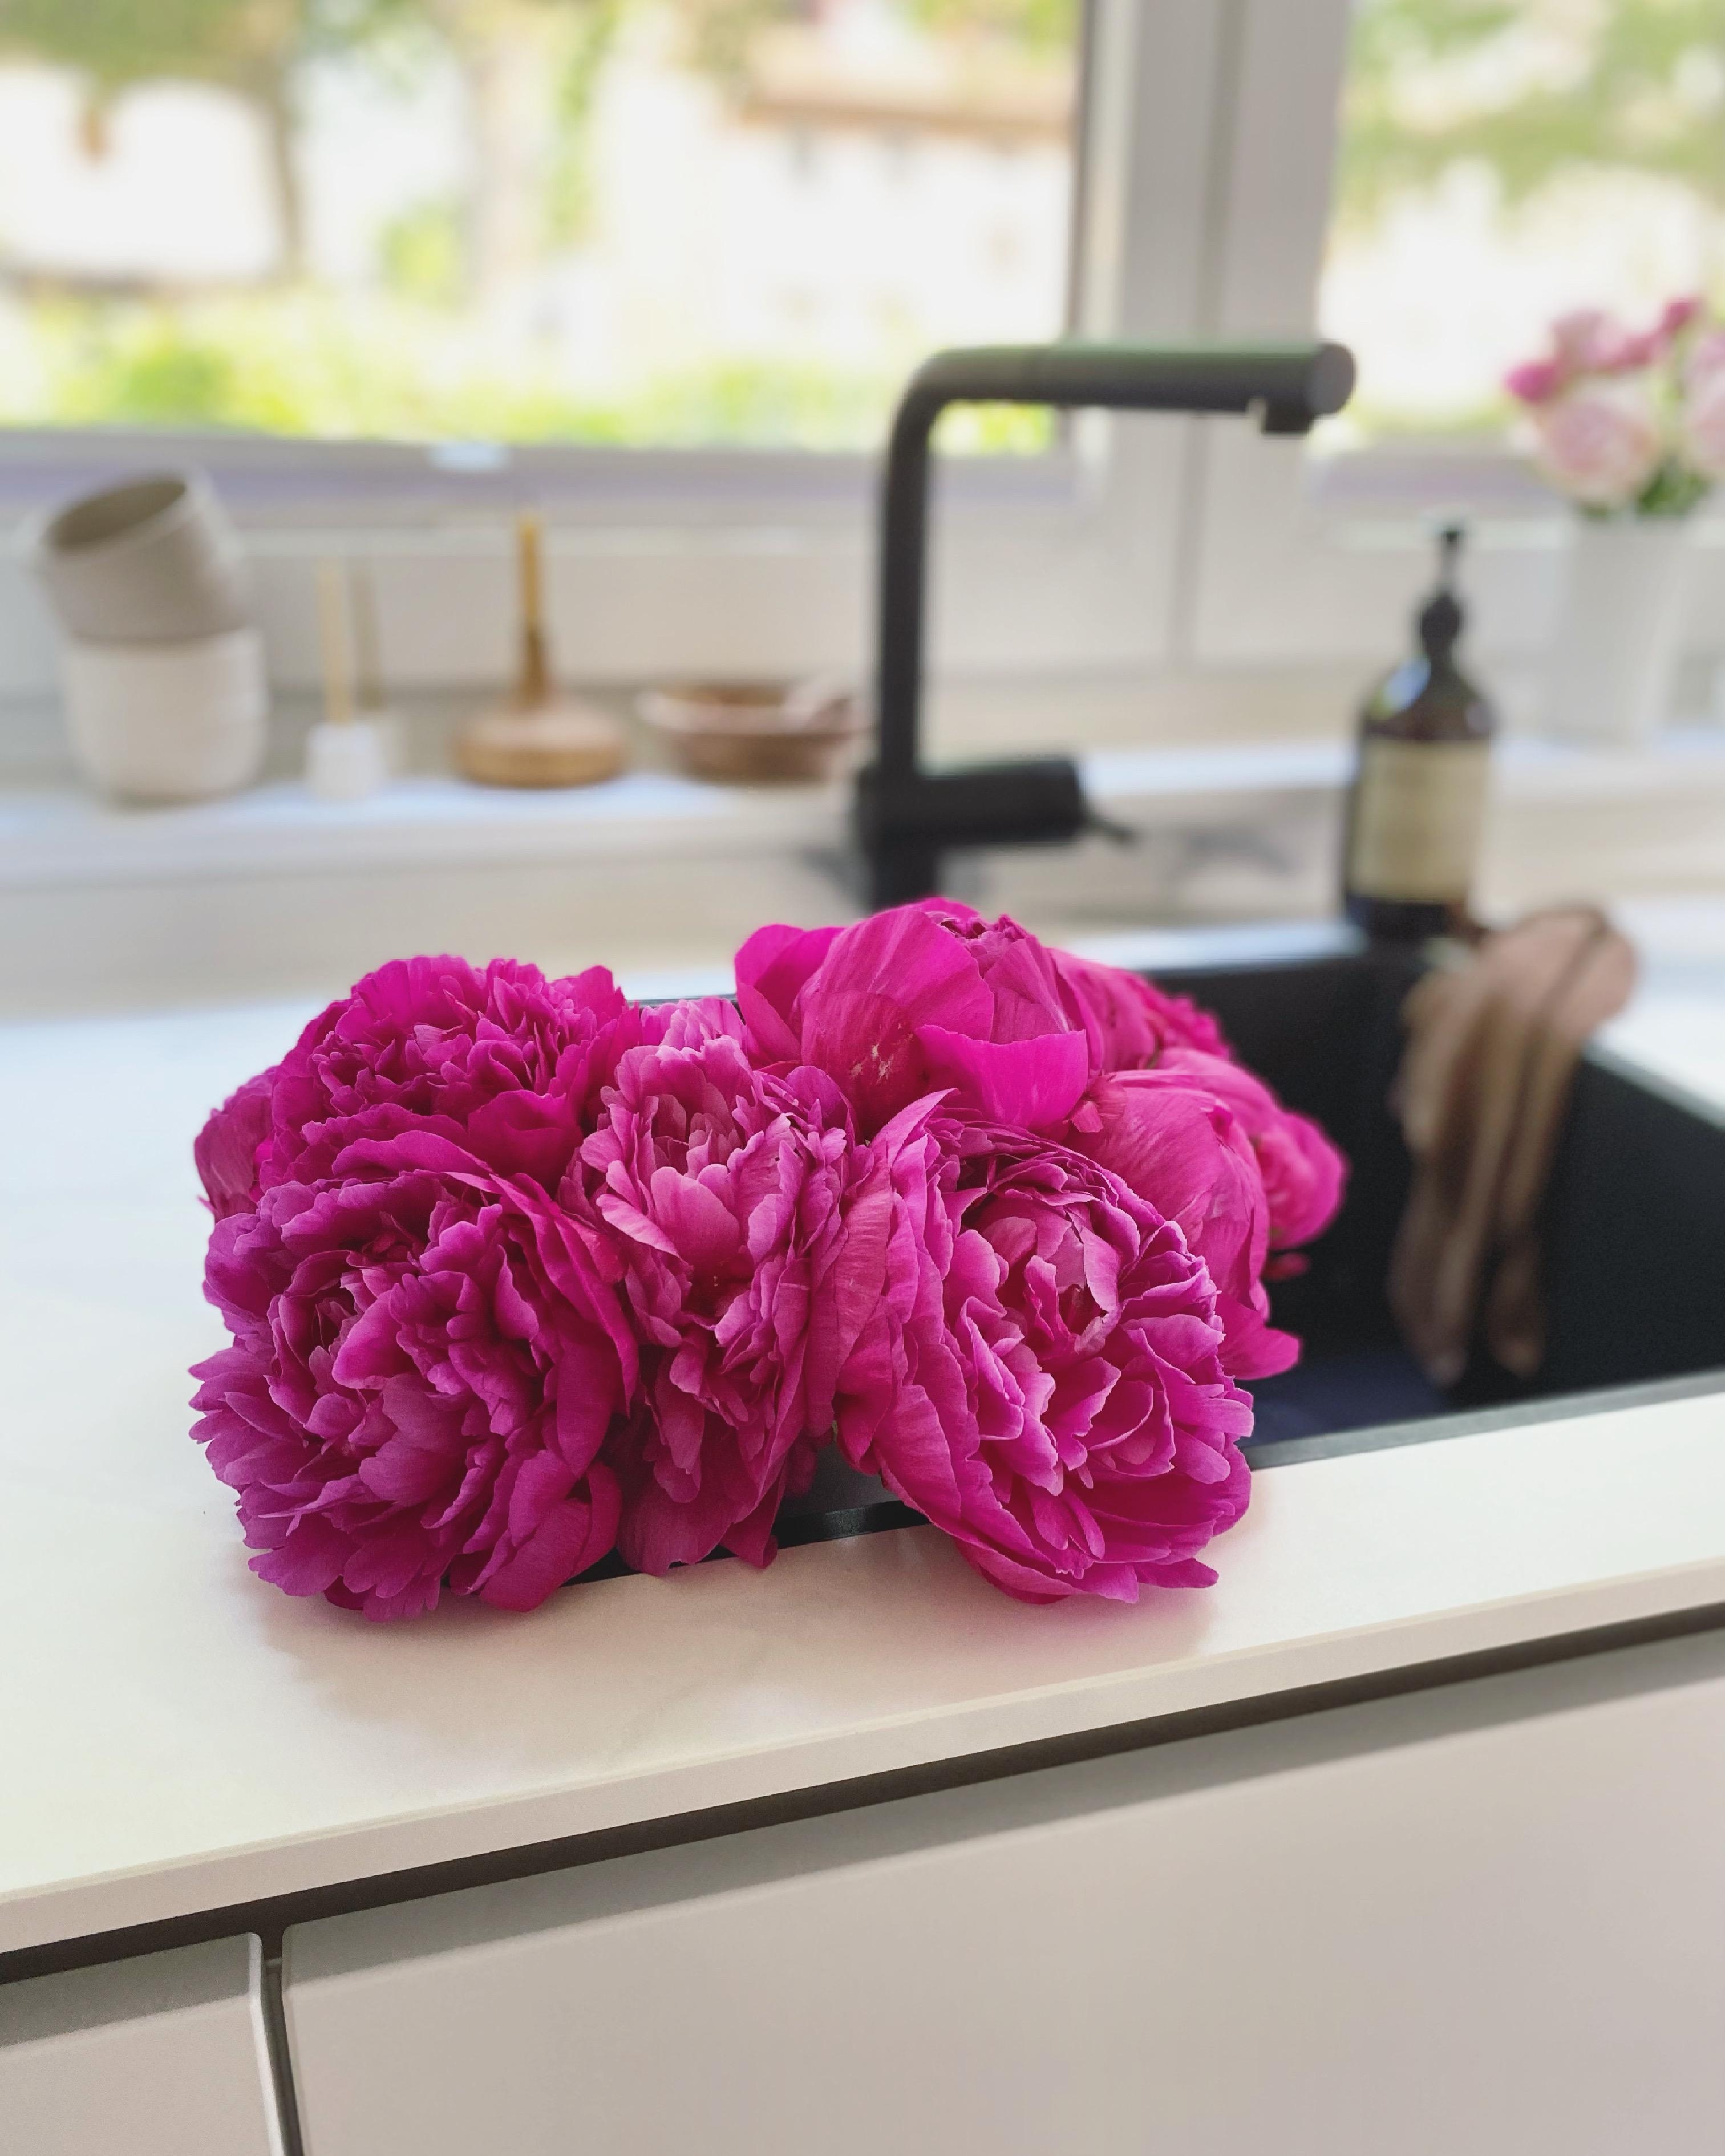 Flowers for you 🌸
#küche#kitchen#interior#couchliebt#blumen#peonien#pfingstrosen